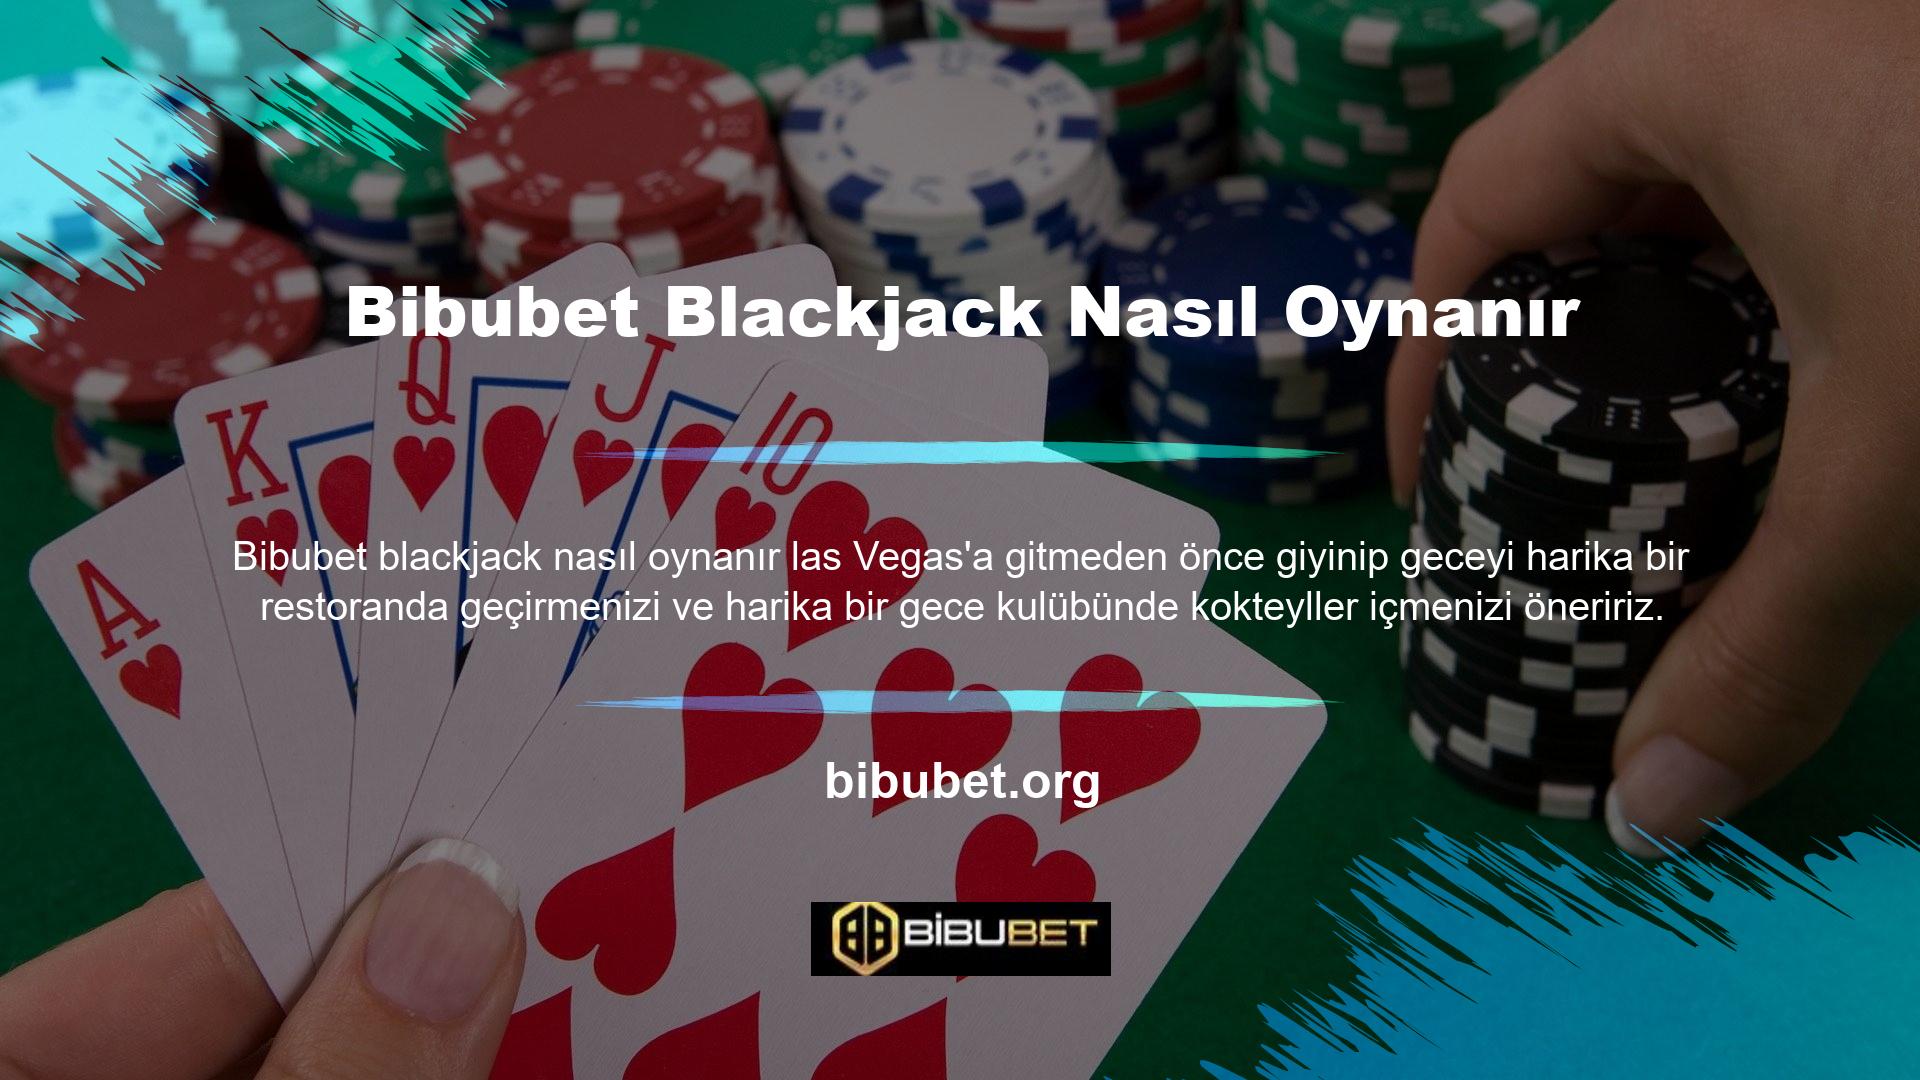 Ünlü Las Vegas şovuna katılmadan önce merakınızı giderin ve Las Vegas Blackjack'te nasıl kazanılacağını öğrenmek için zaman ayırın